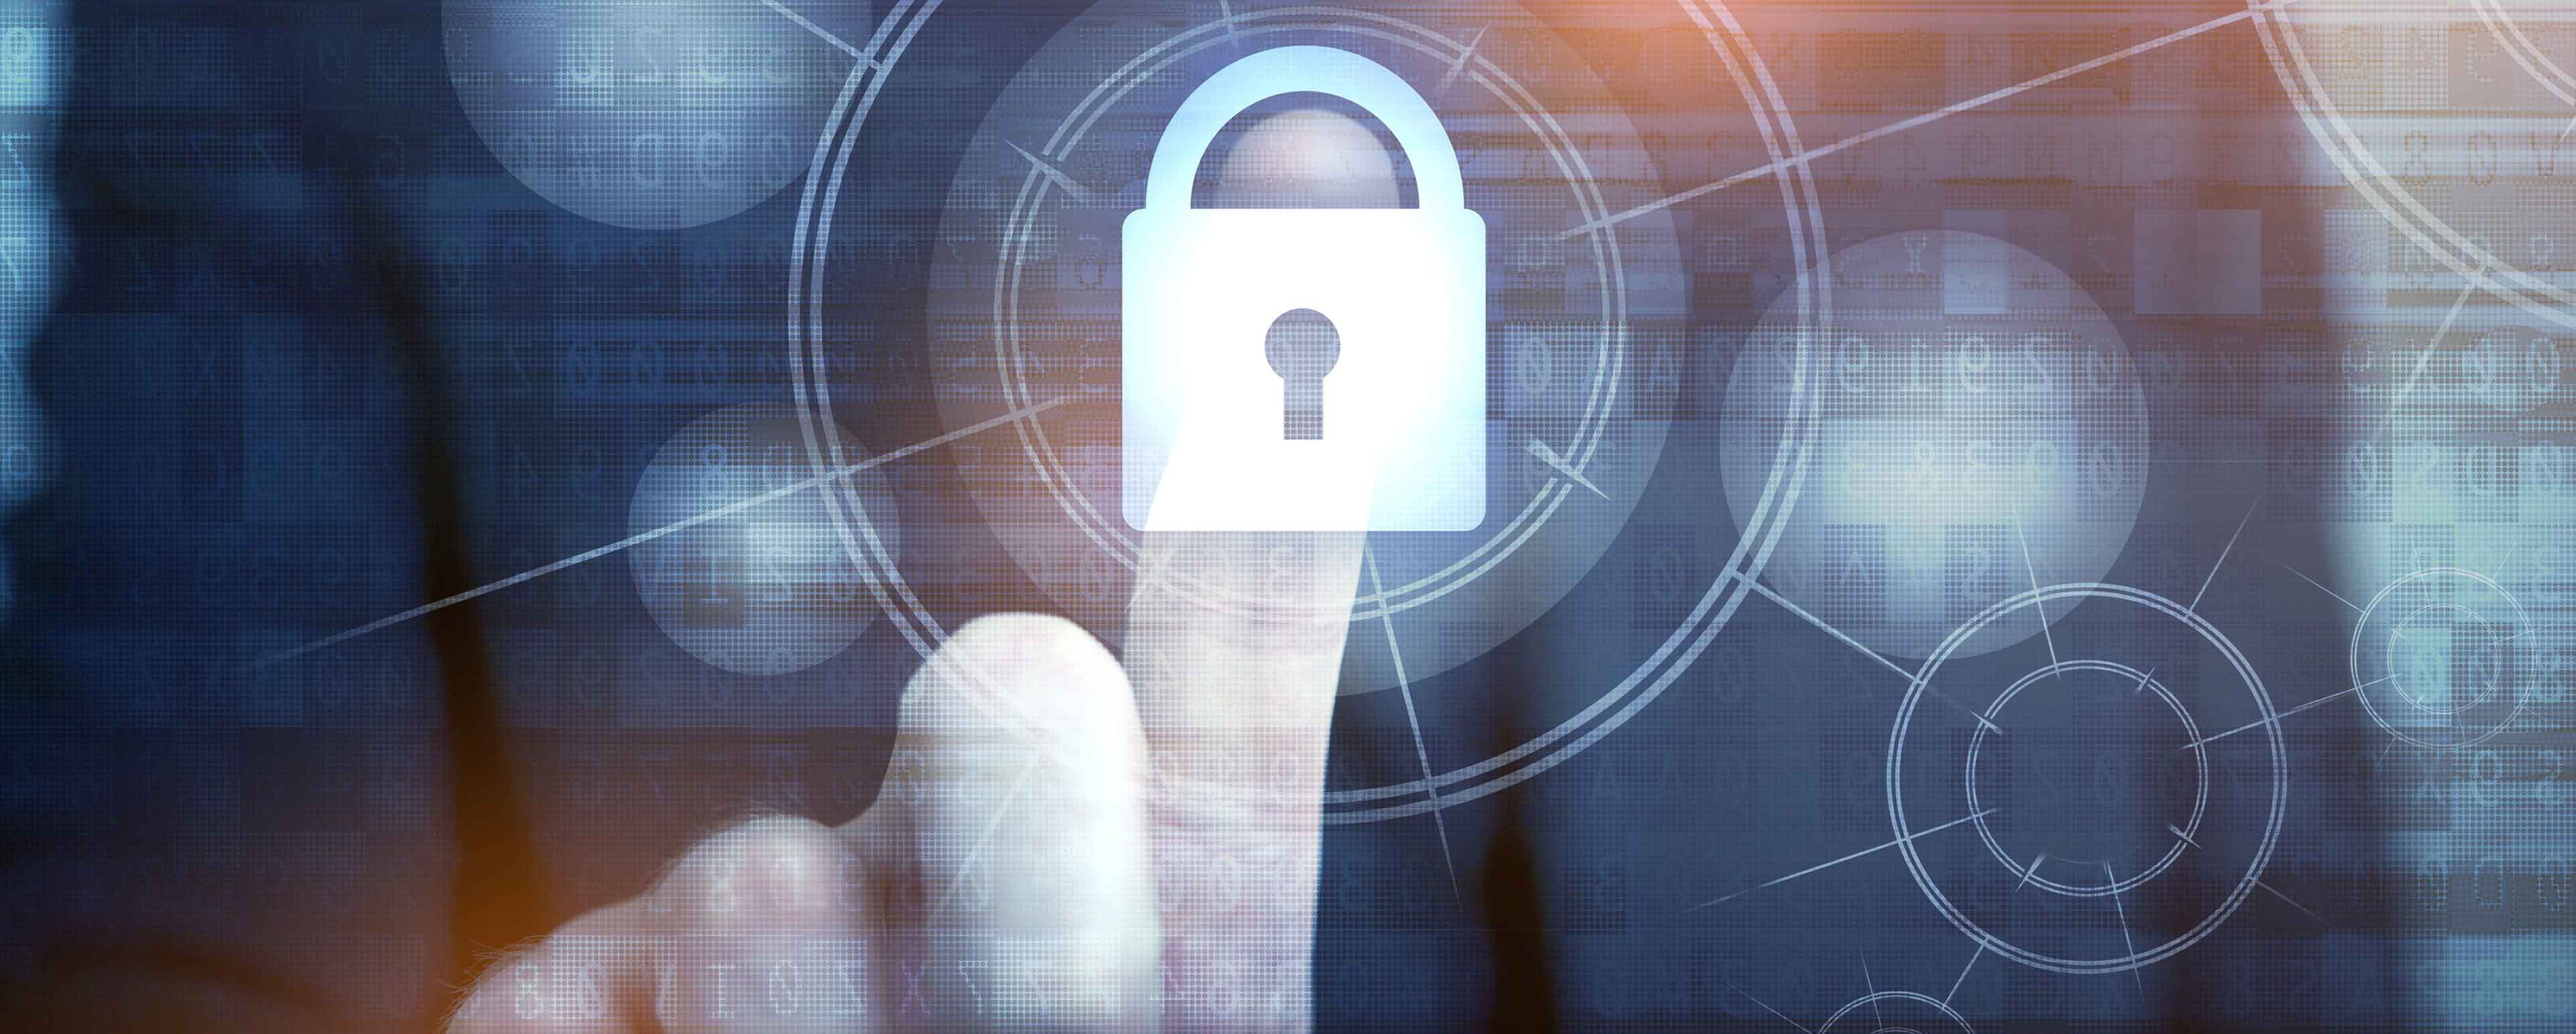 chloss, Symbol Datensicherheit, Datenklau, Cyber-Versicherung